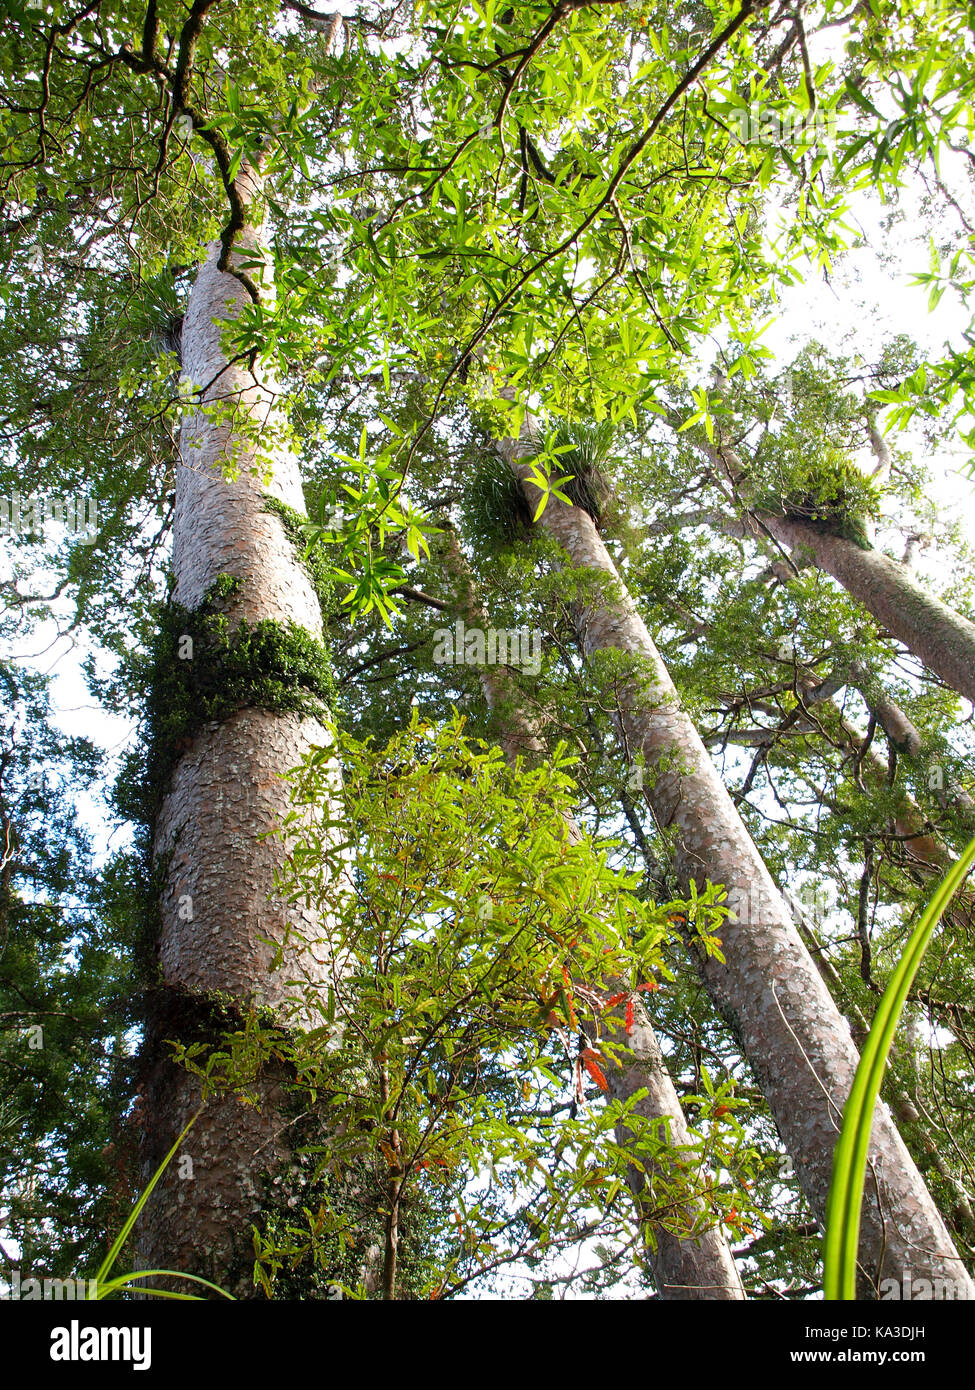 Nuova Zelanda il più ben noto albero kauri. Questo albero è massiccia e grande. hard rock solid kauri è ancora popolare per mobili e artigianato del legno. Foto Stock